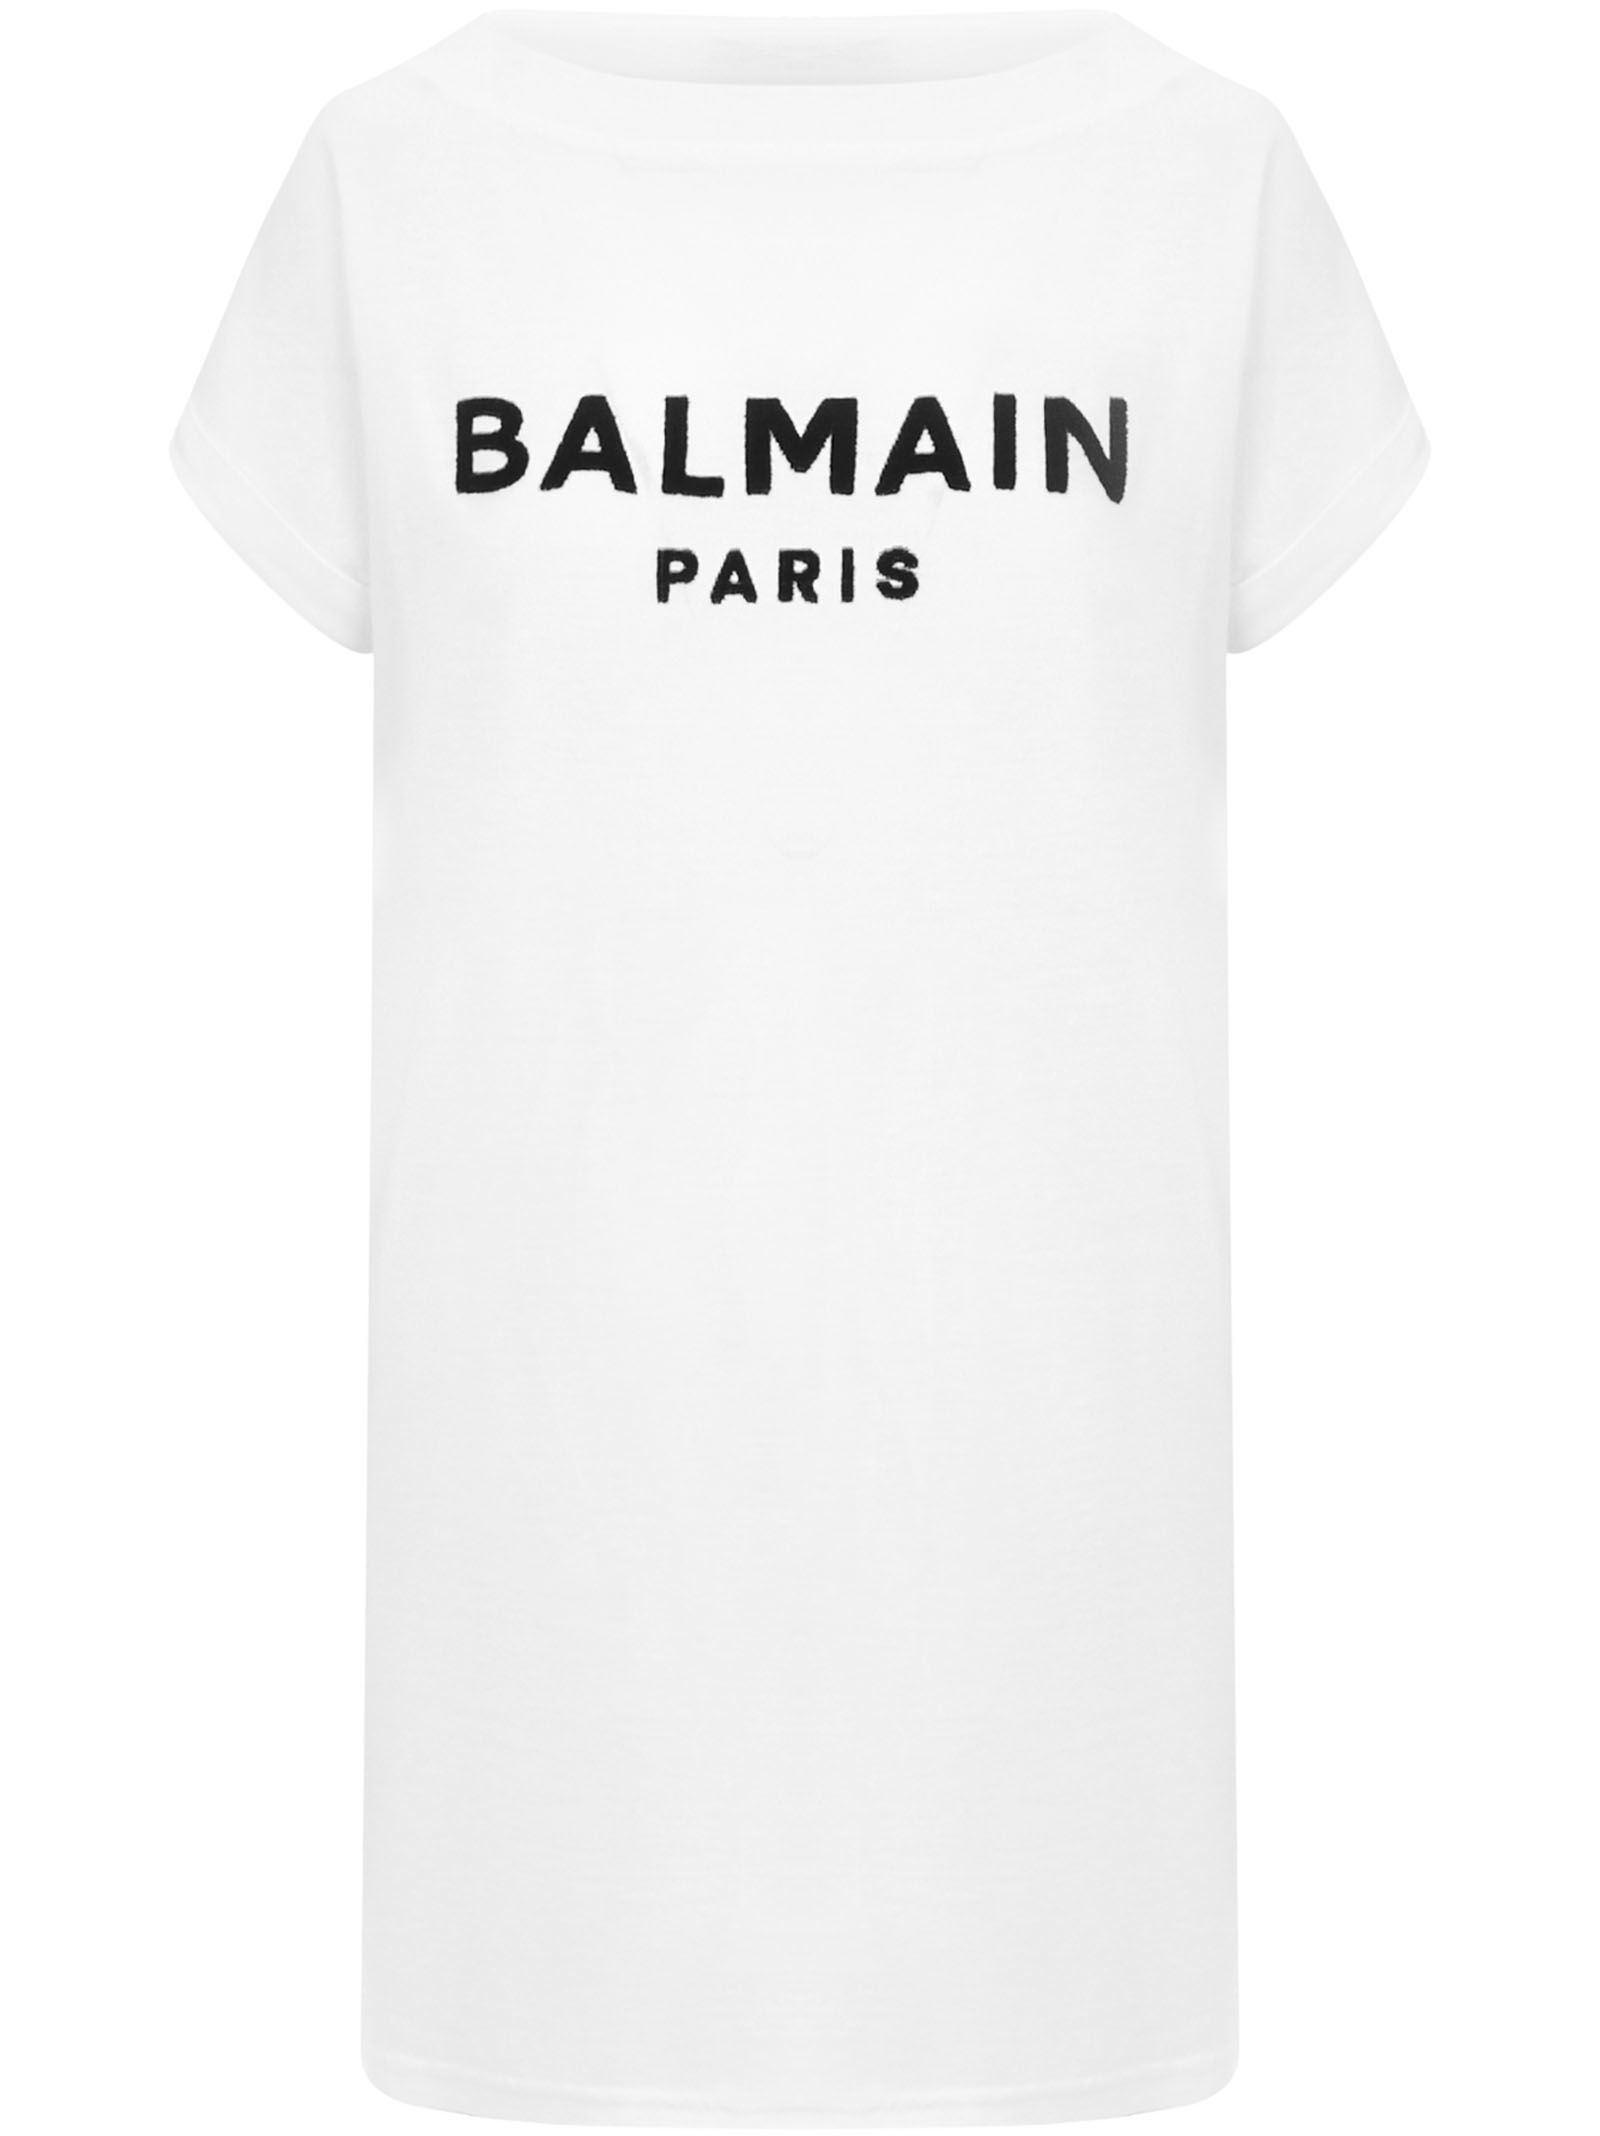 Balmain Paris T Shirt Dress Online, 59 ...